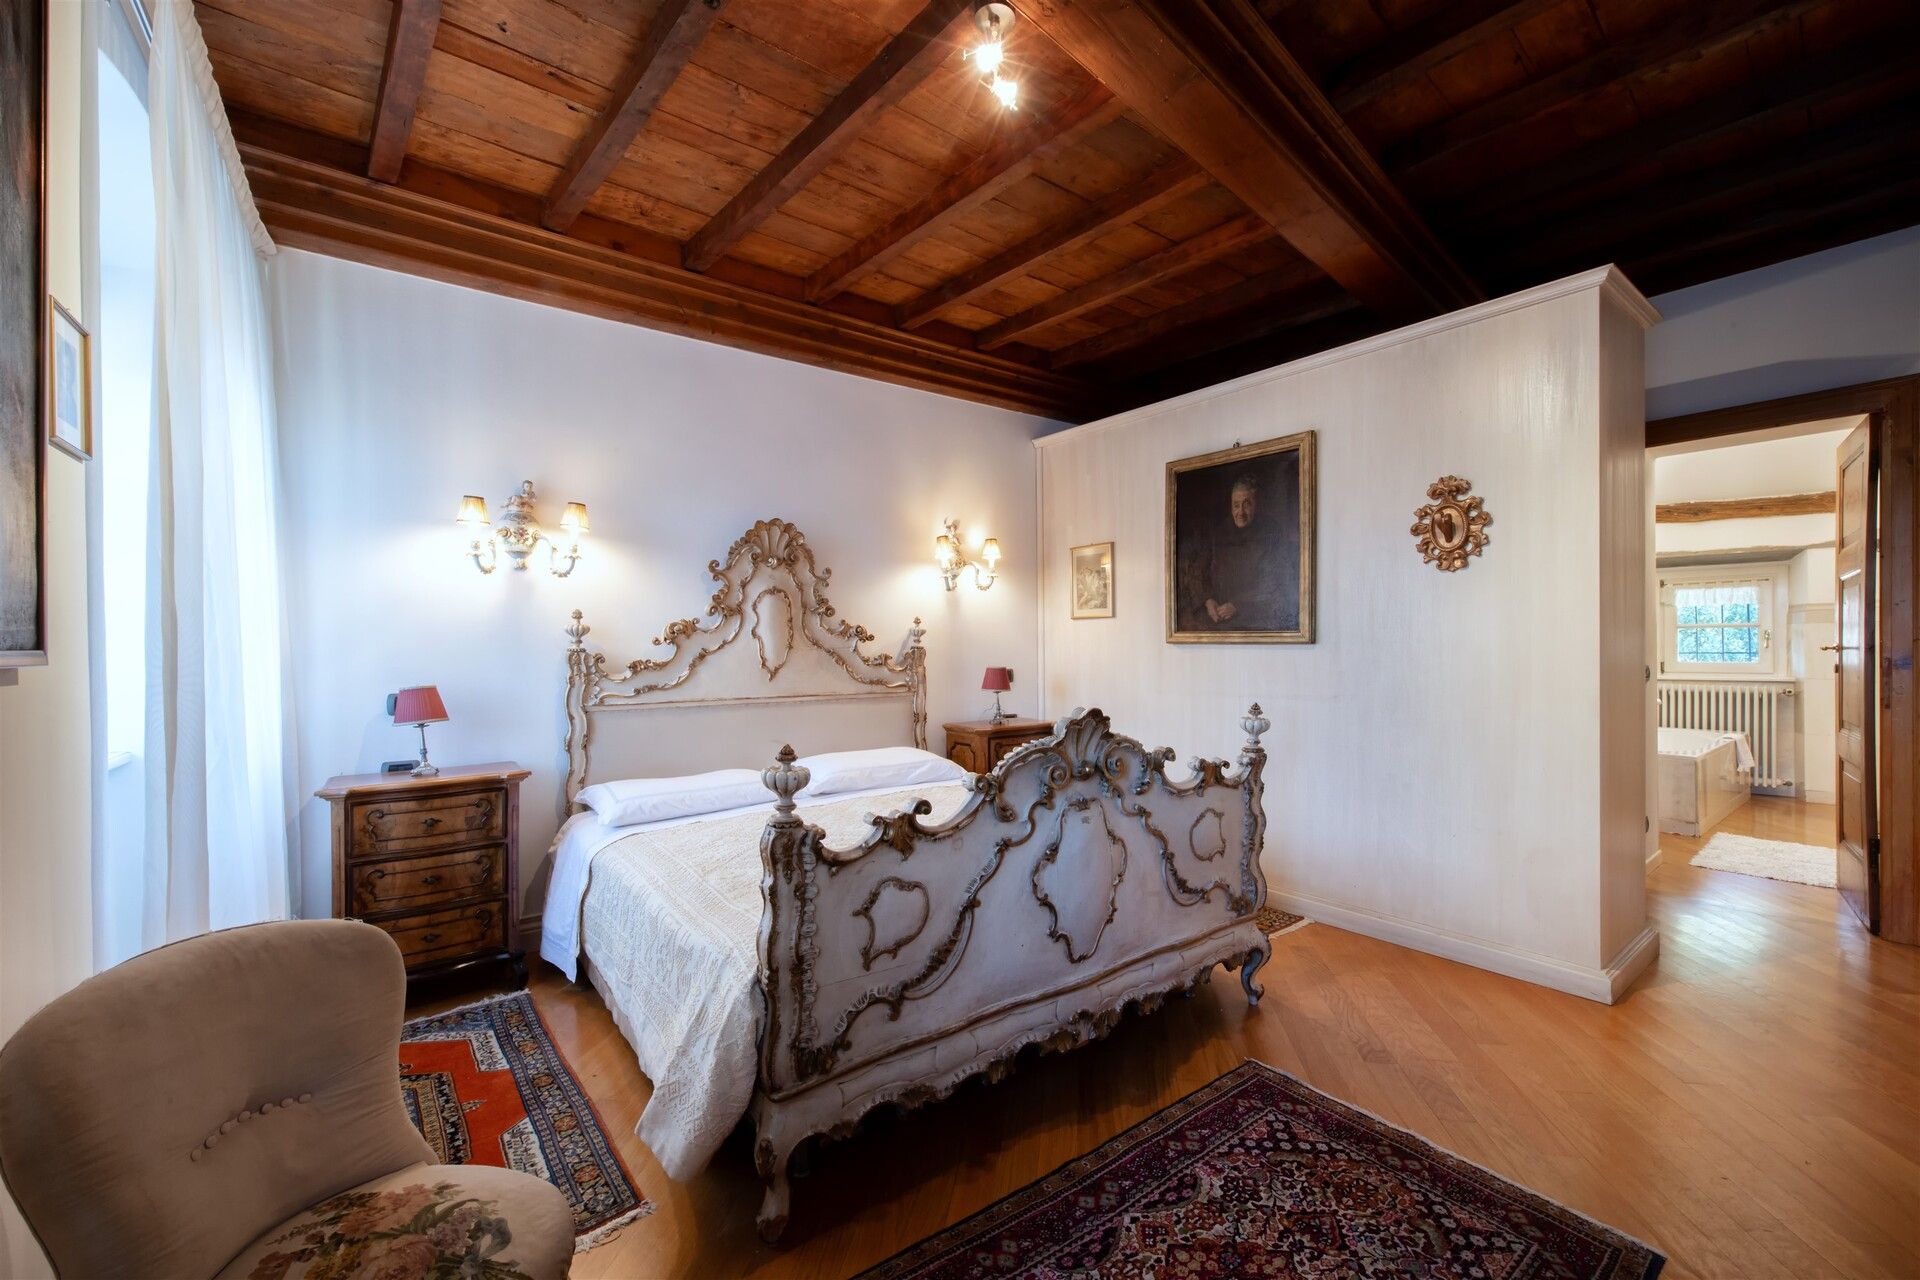 Affitto villa in zona tranquilla Gravellona Toce Piemonte